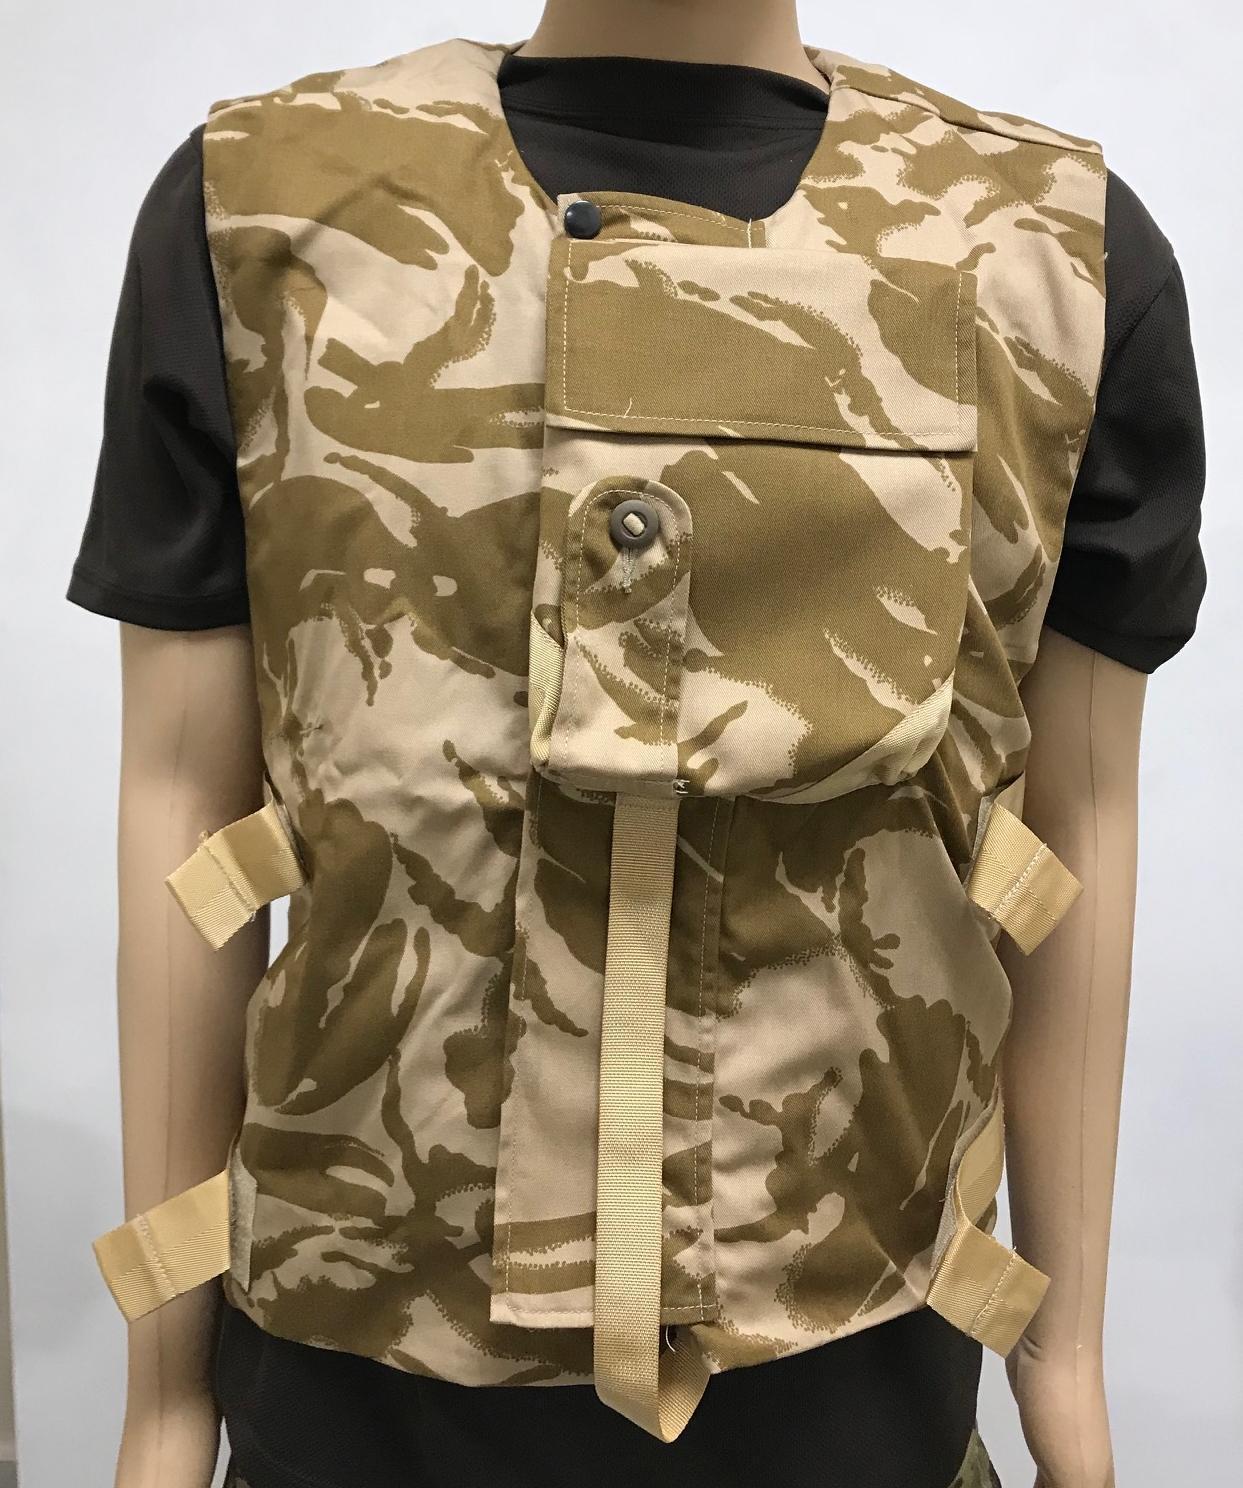 British Army Flak Jacket Body Armour Cover Vest DPM Cadet Surplus